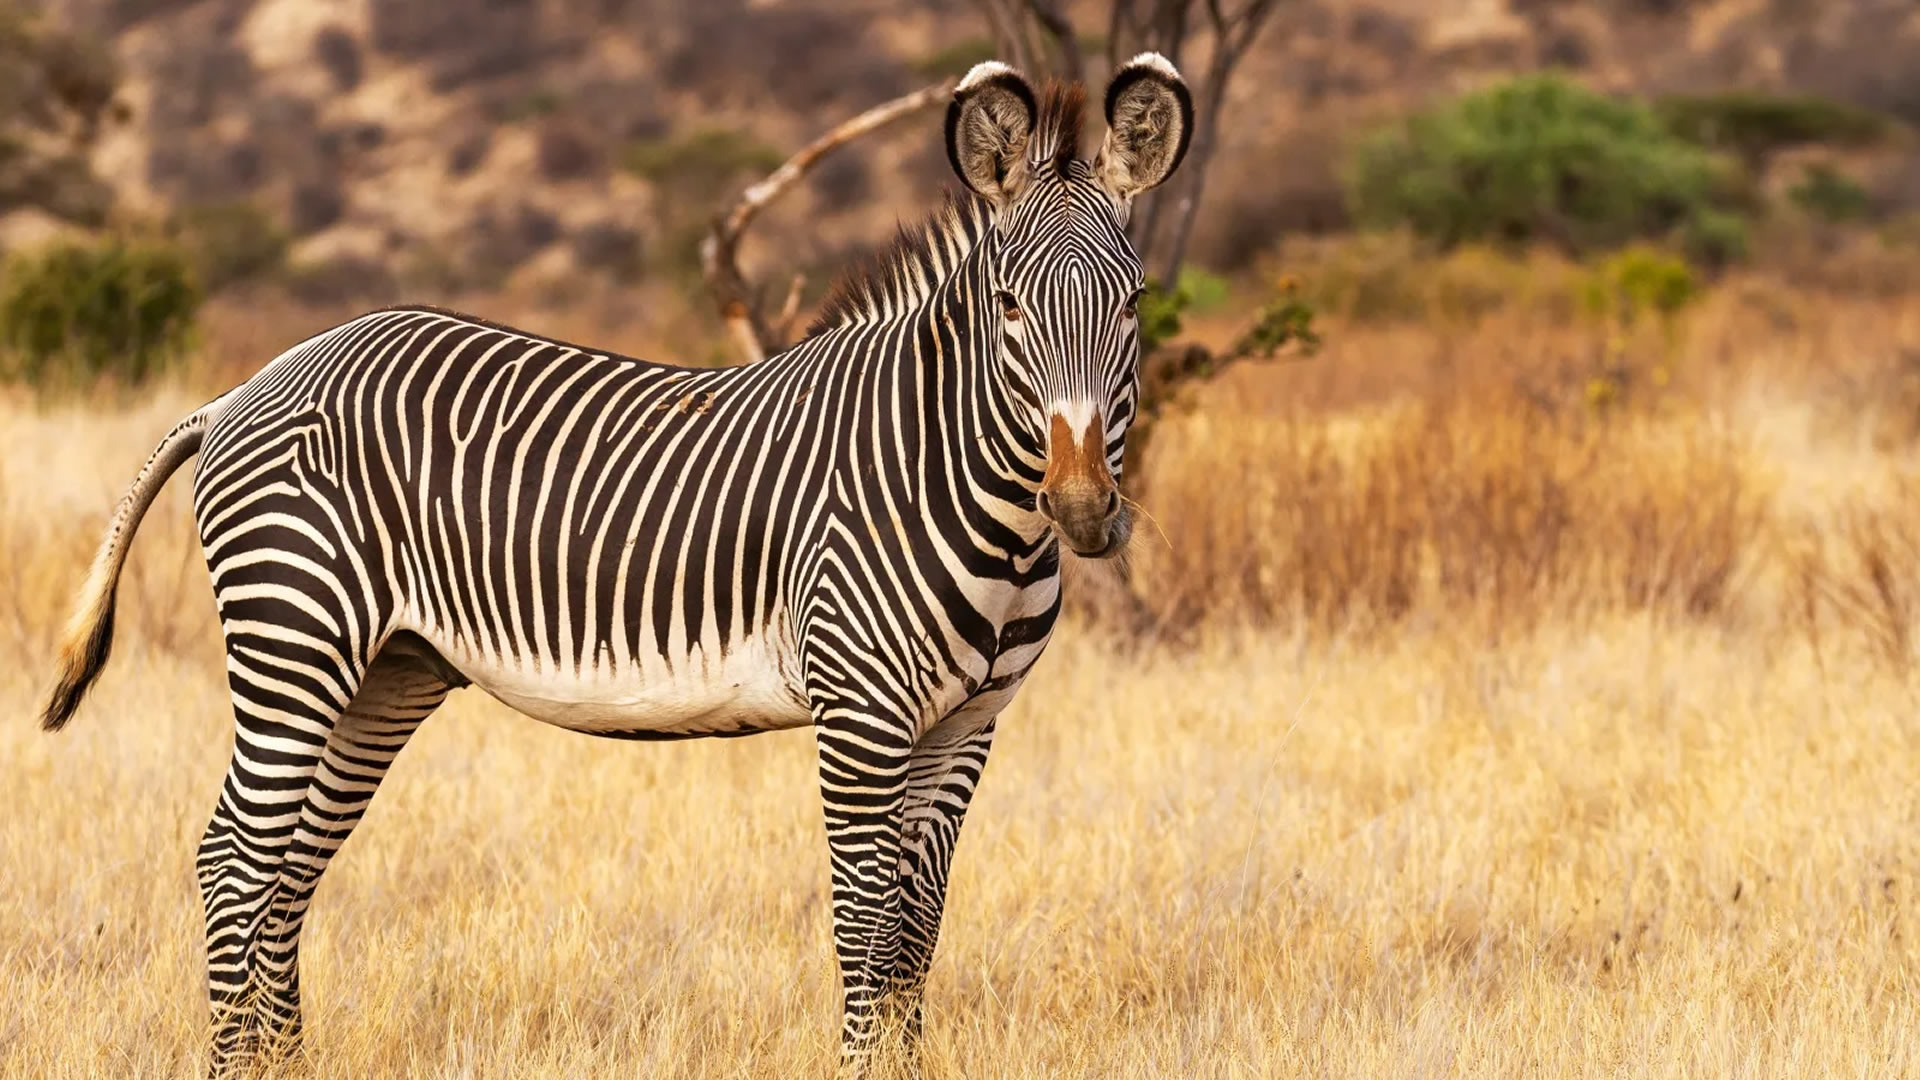 samburu national reserve